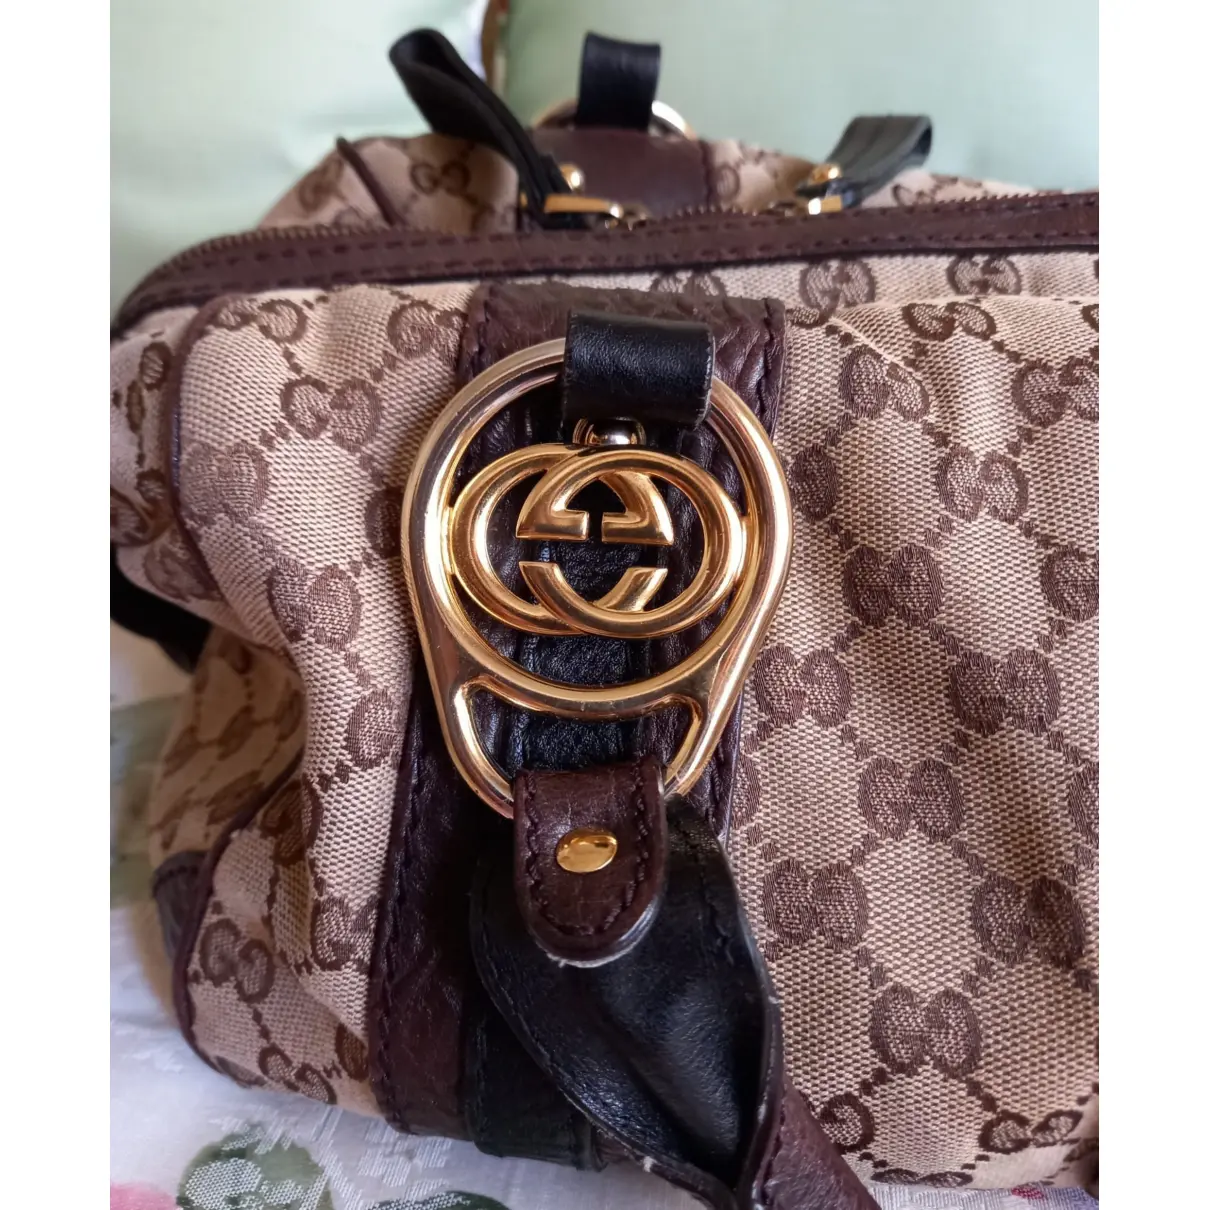 Buy Gucci Boston cloth handbag online